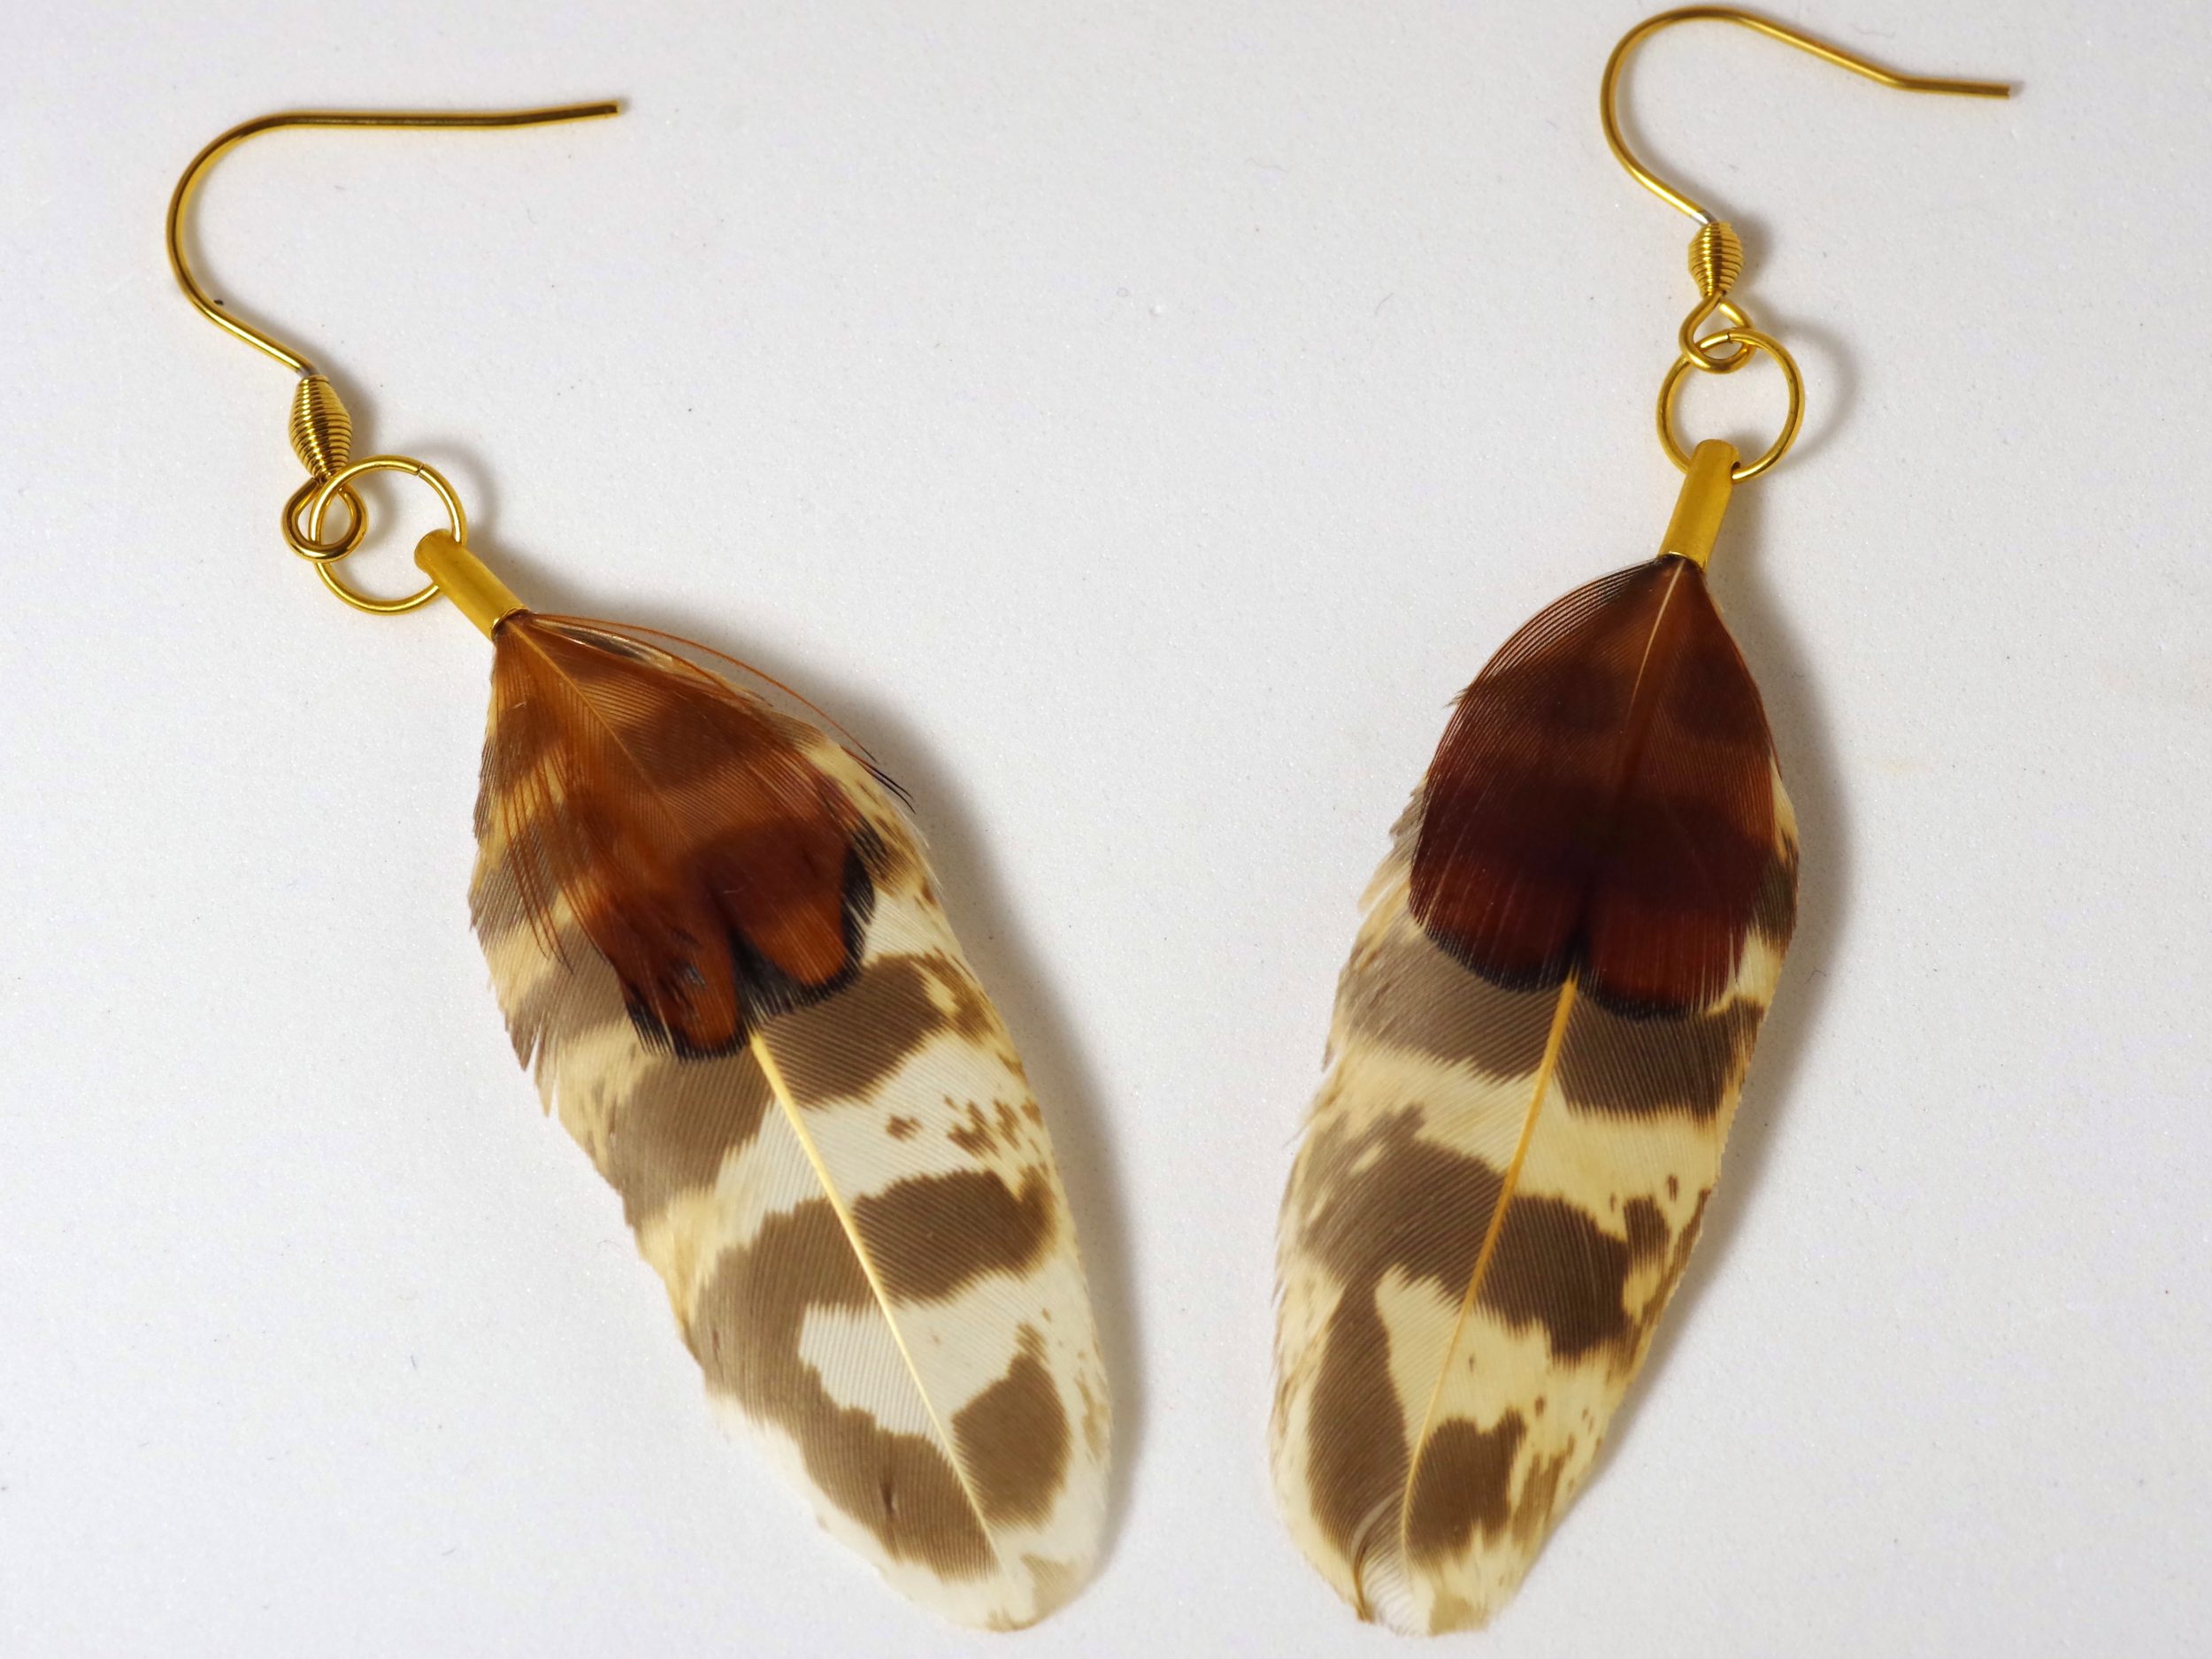 boucles d'oreilles en plumes d'automne dans des tons marron, beige et roux, anneaux et crochets dorés